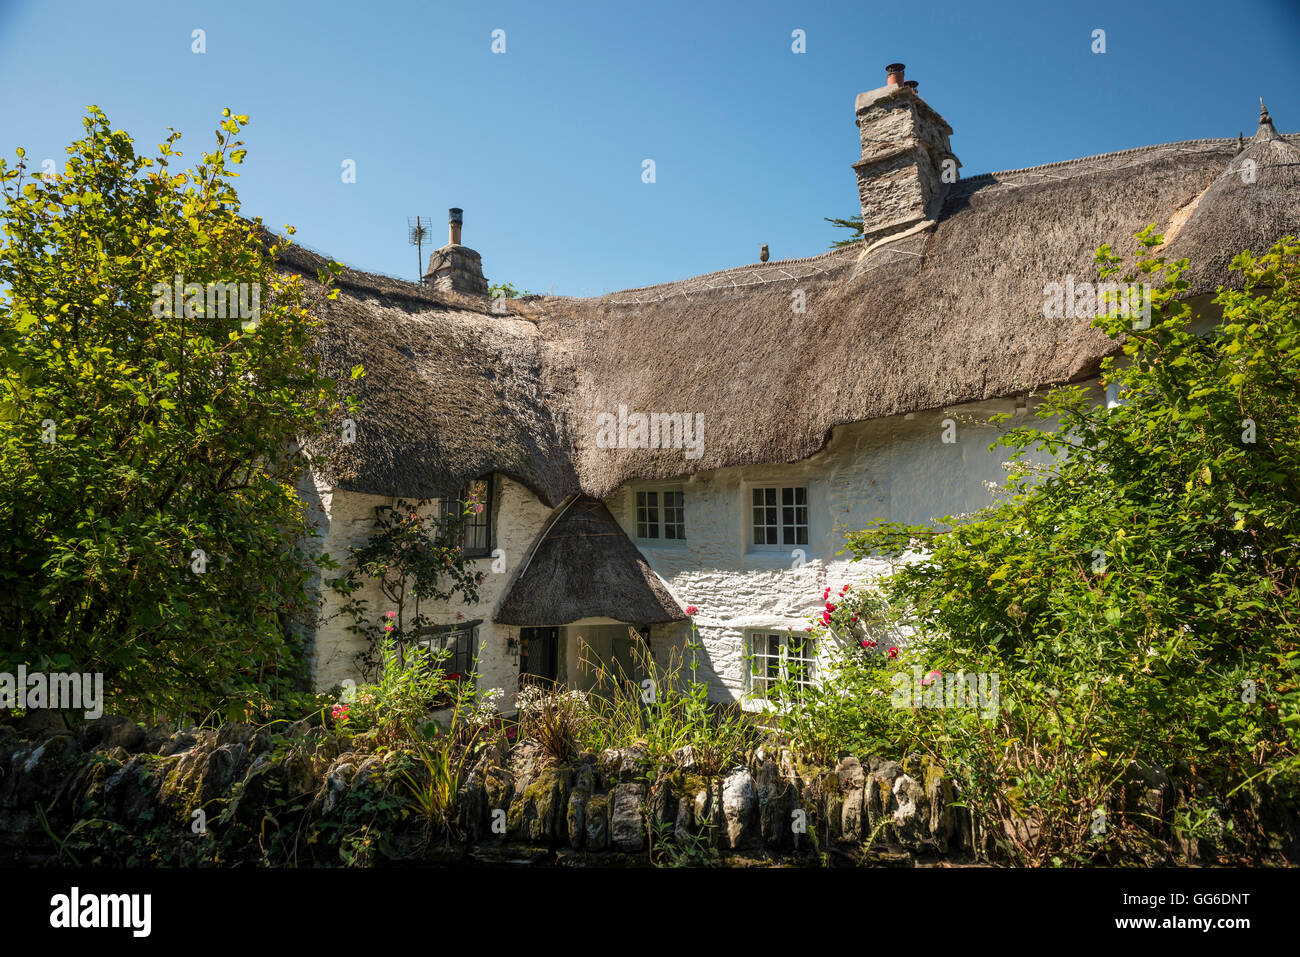 Antico cottage con il tetto di paglia nel villaggio di Ringmore nel sud prosciutti, Devon, Regno Unito Foto Stock